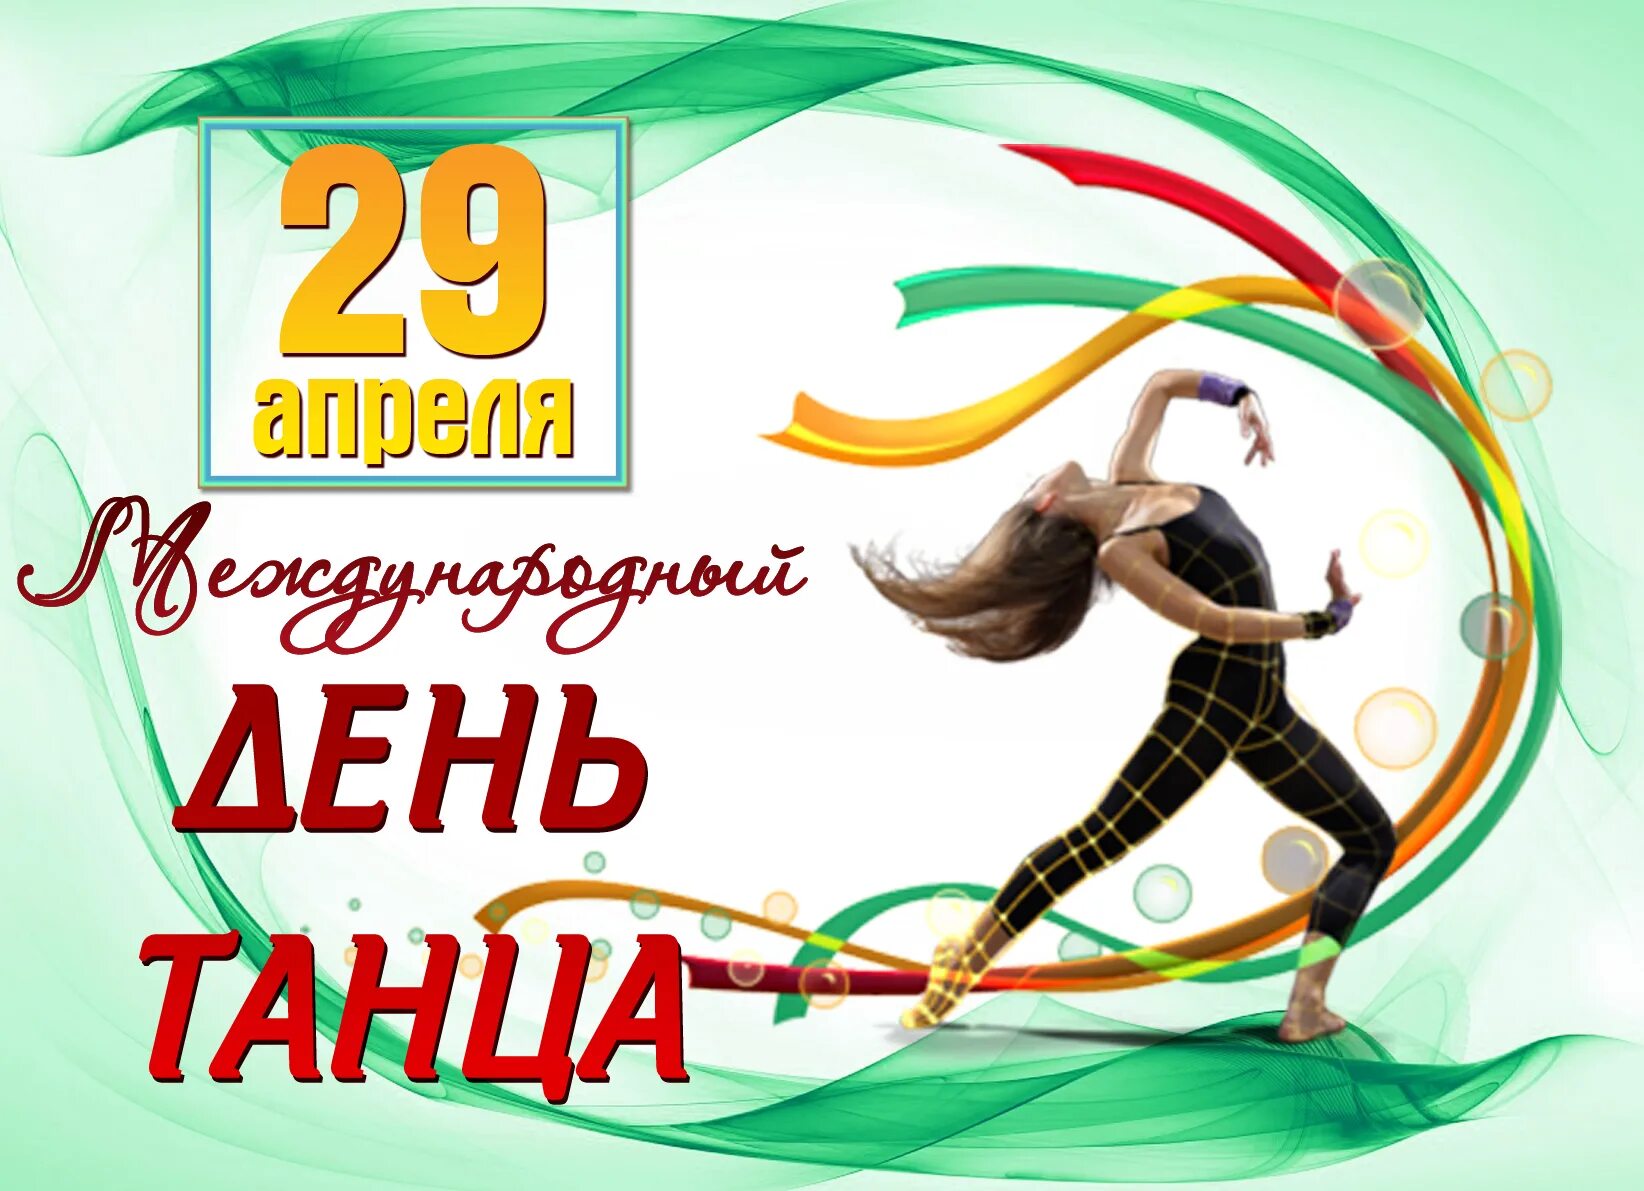 29 апреля день календаря. Международный день танца. 29 Апреля Всемирный день танца. С днем танца поздравления. Международный день танца поздравление.